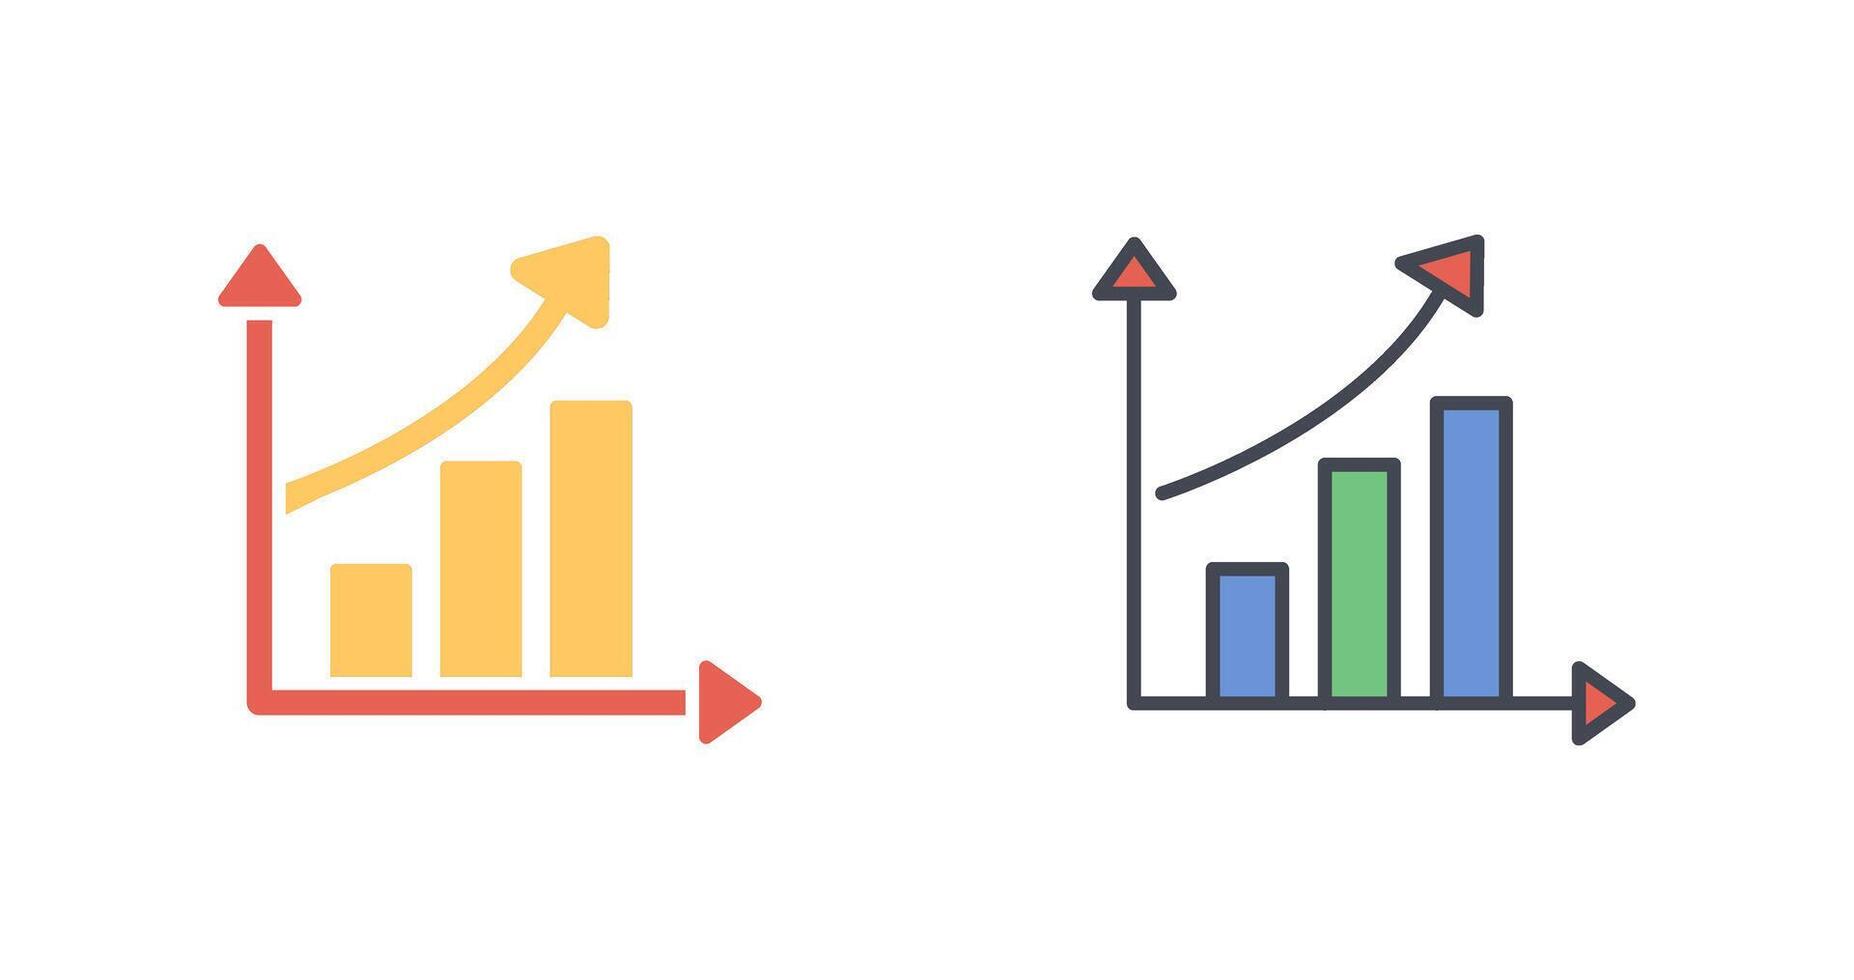 Rising Statistics Icon Design vector